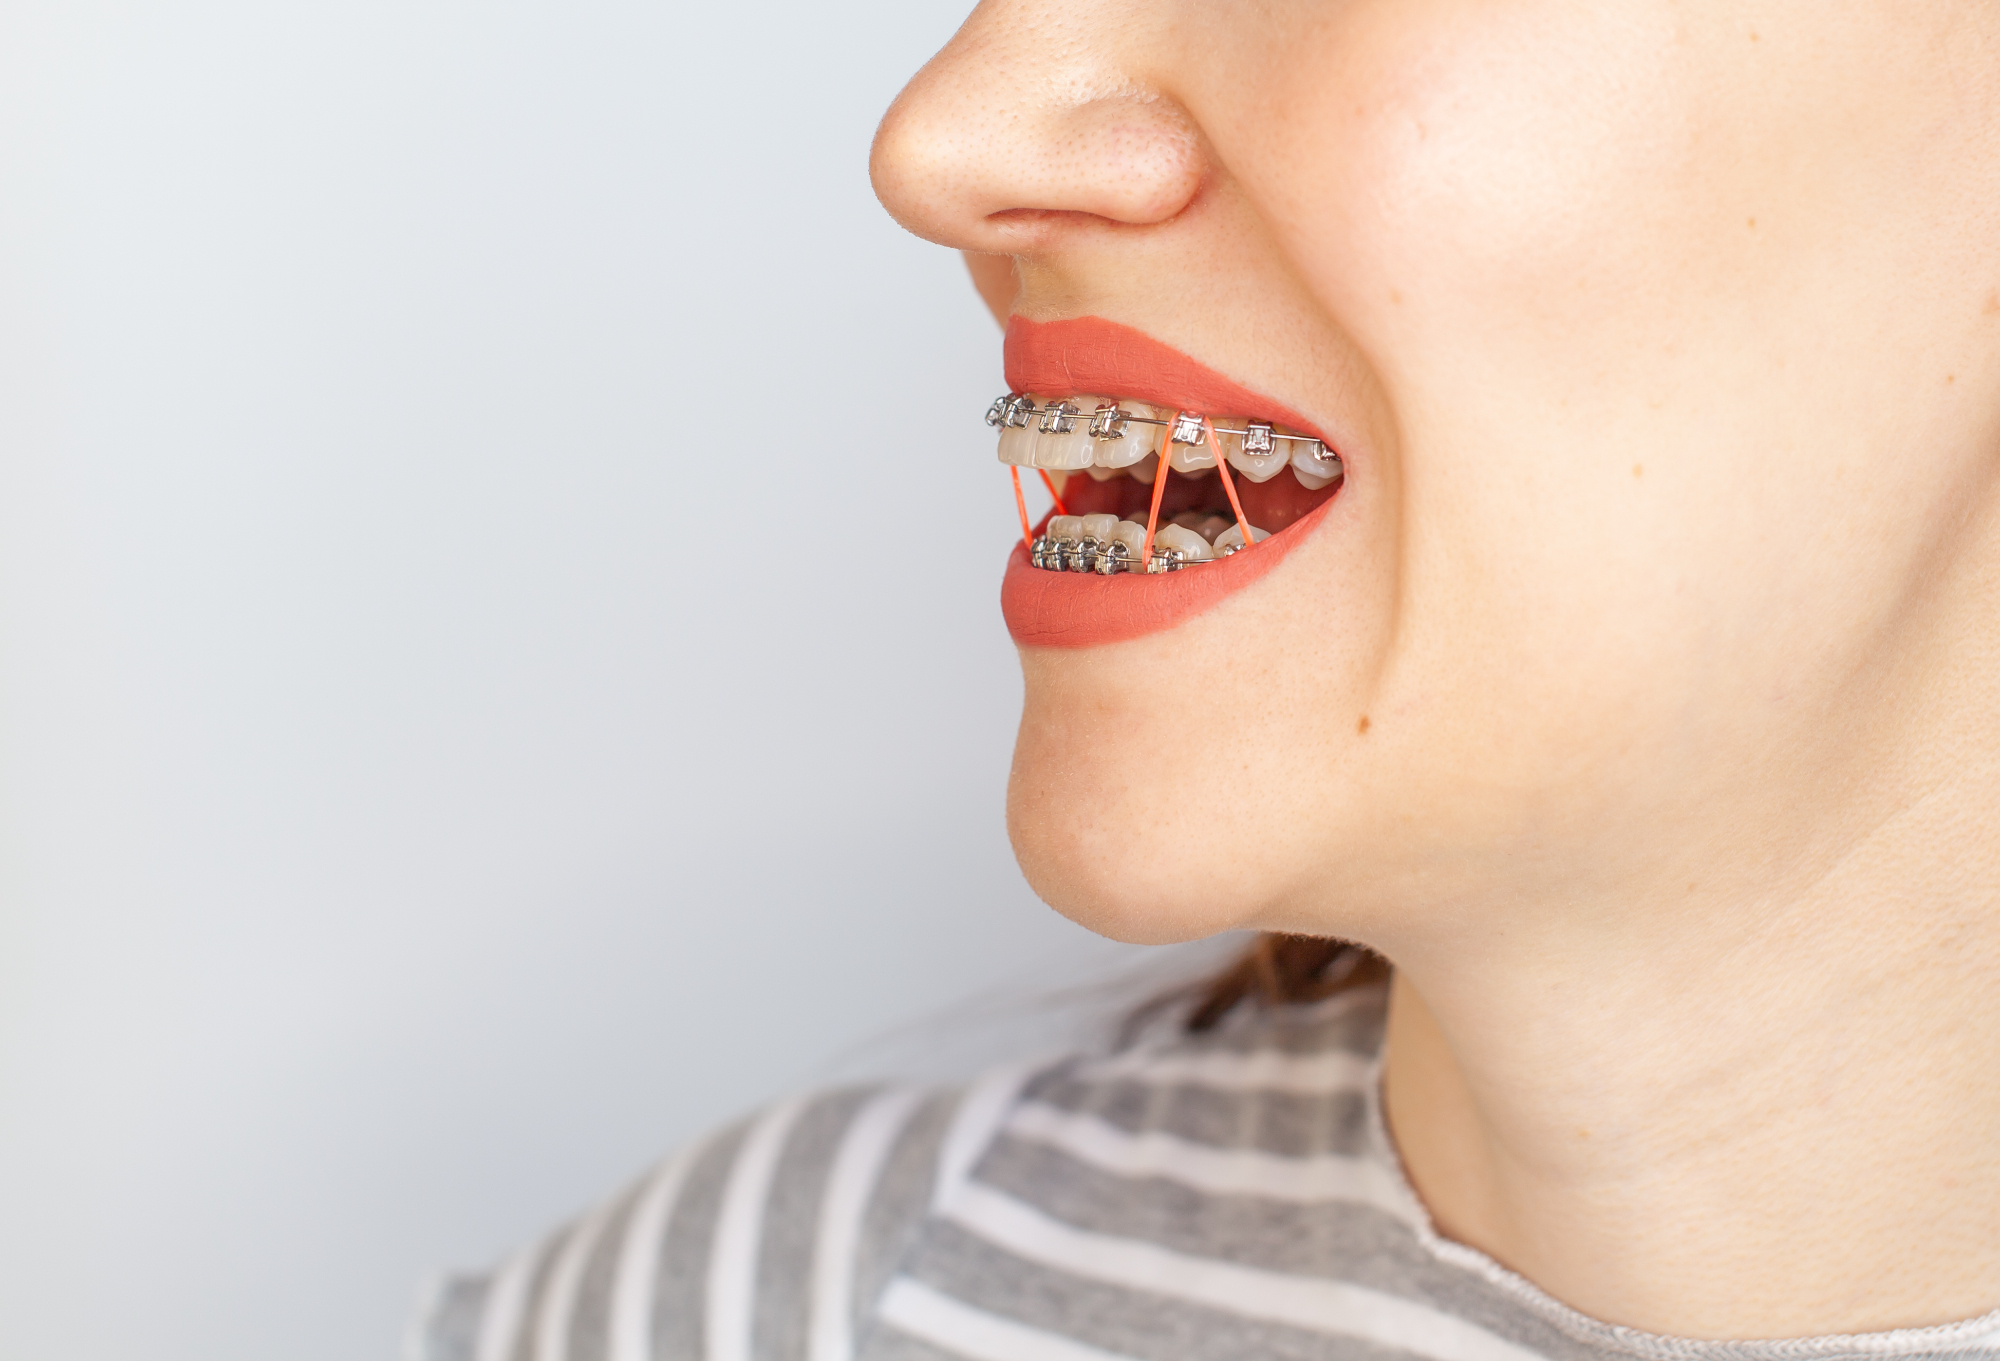 Vam je tudi izbrani ortodont predlagal nevidni zobni aparat oziroma Invisalign?